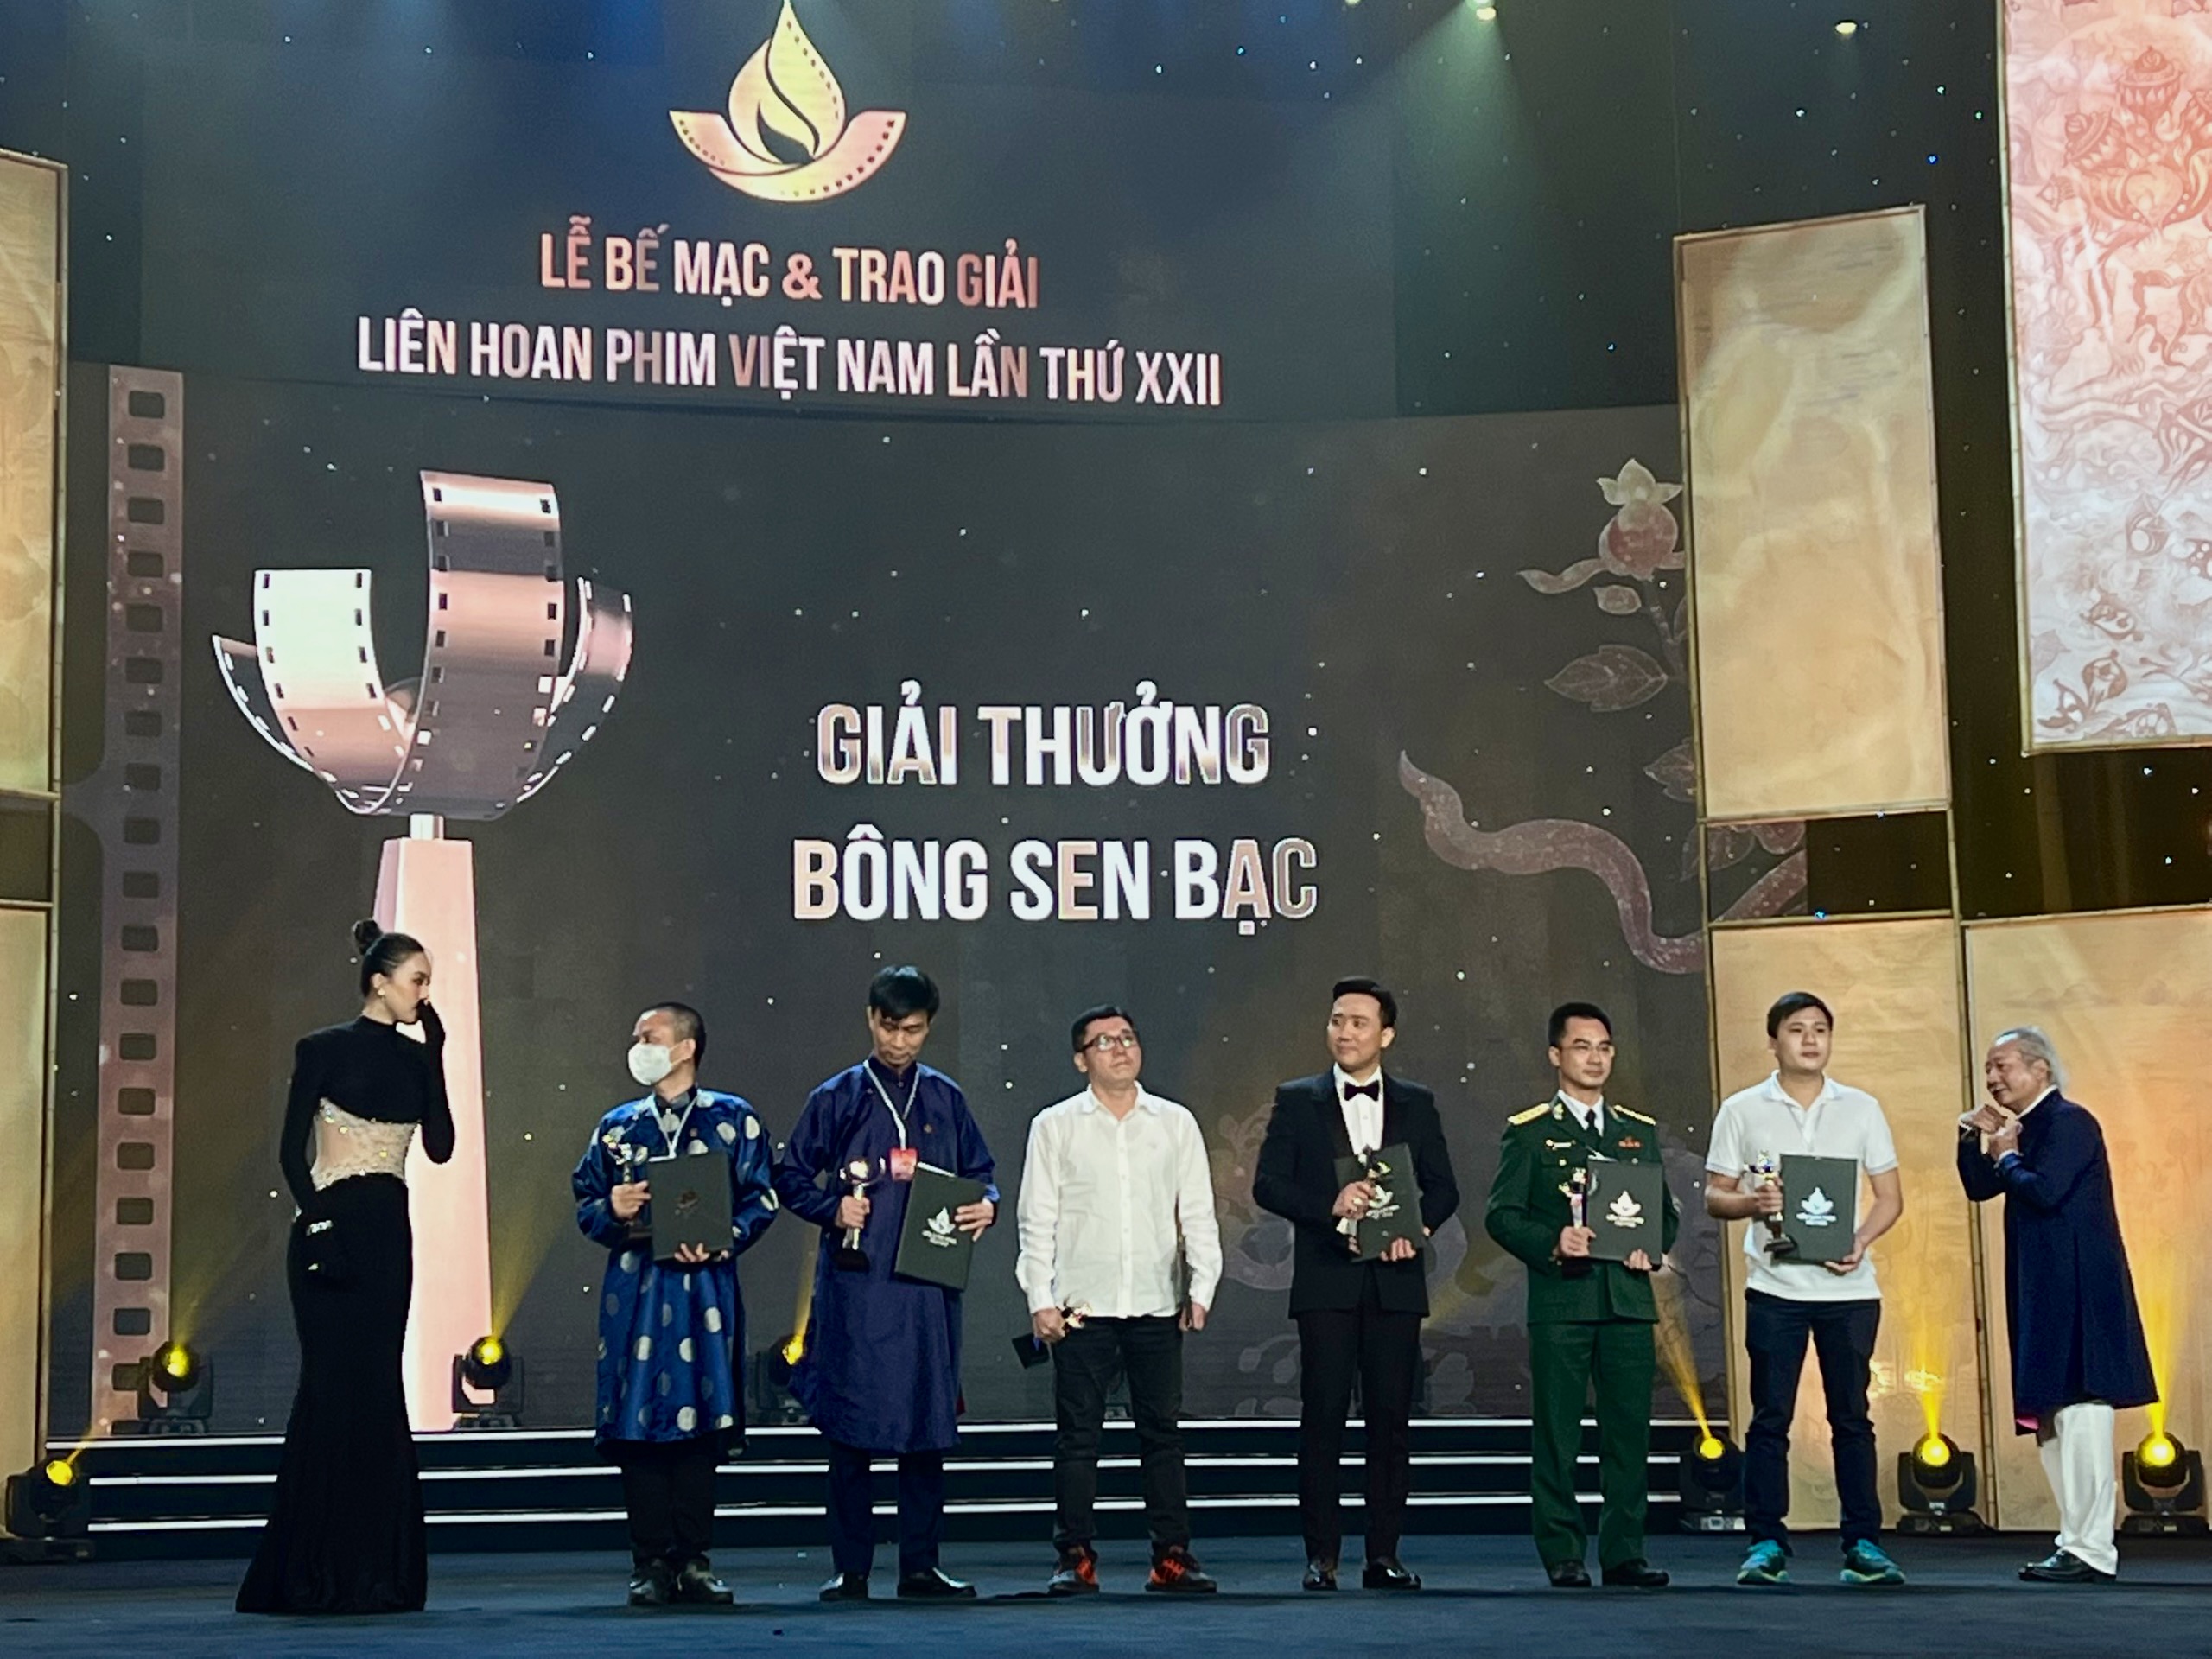 Trấn Thành thắng lớn tại Liên hoan phim Việt Nam 2021 - ảnh 2